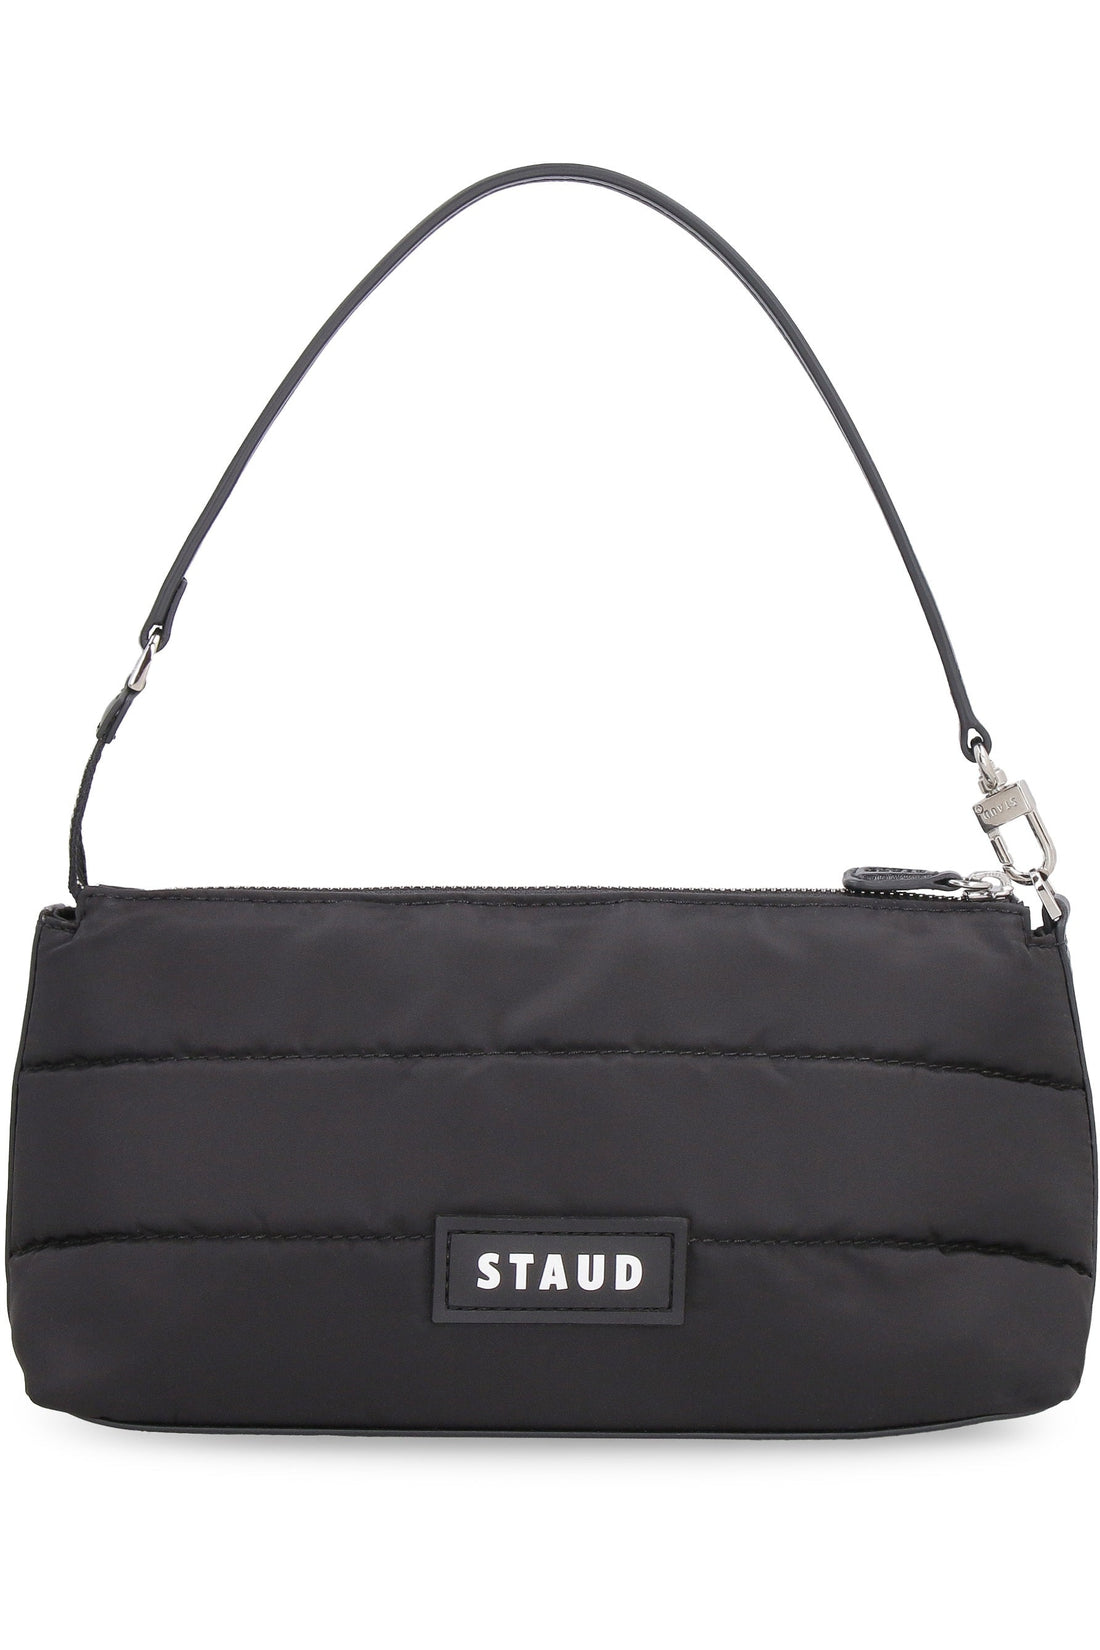 STAUD-OUTLET-SALE-Kaia nylon shoulder bag-ARCHIVIST